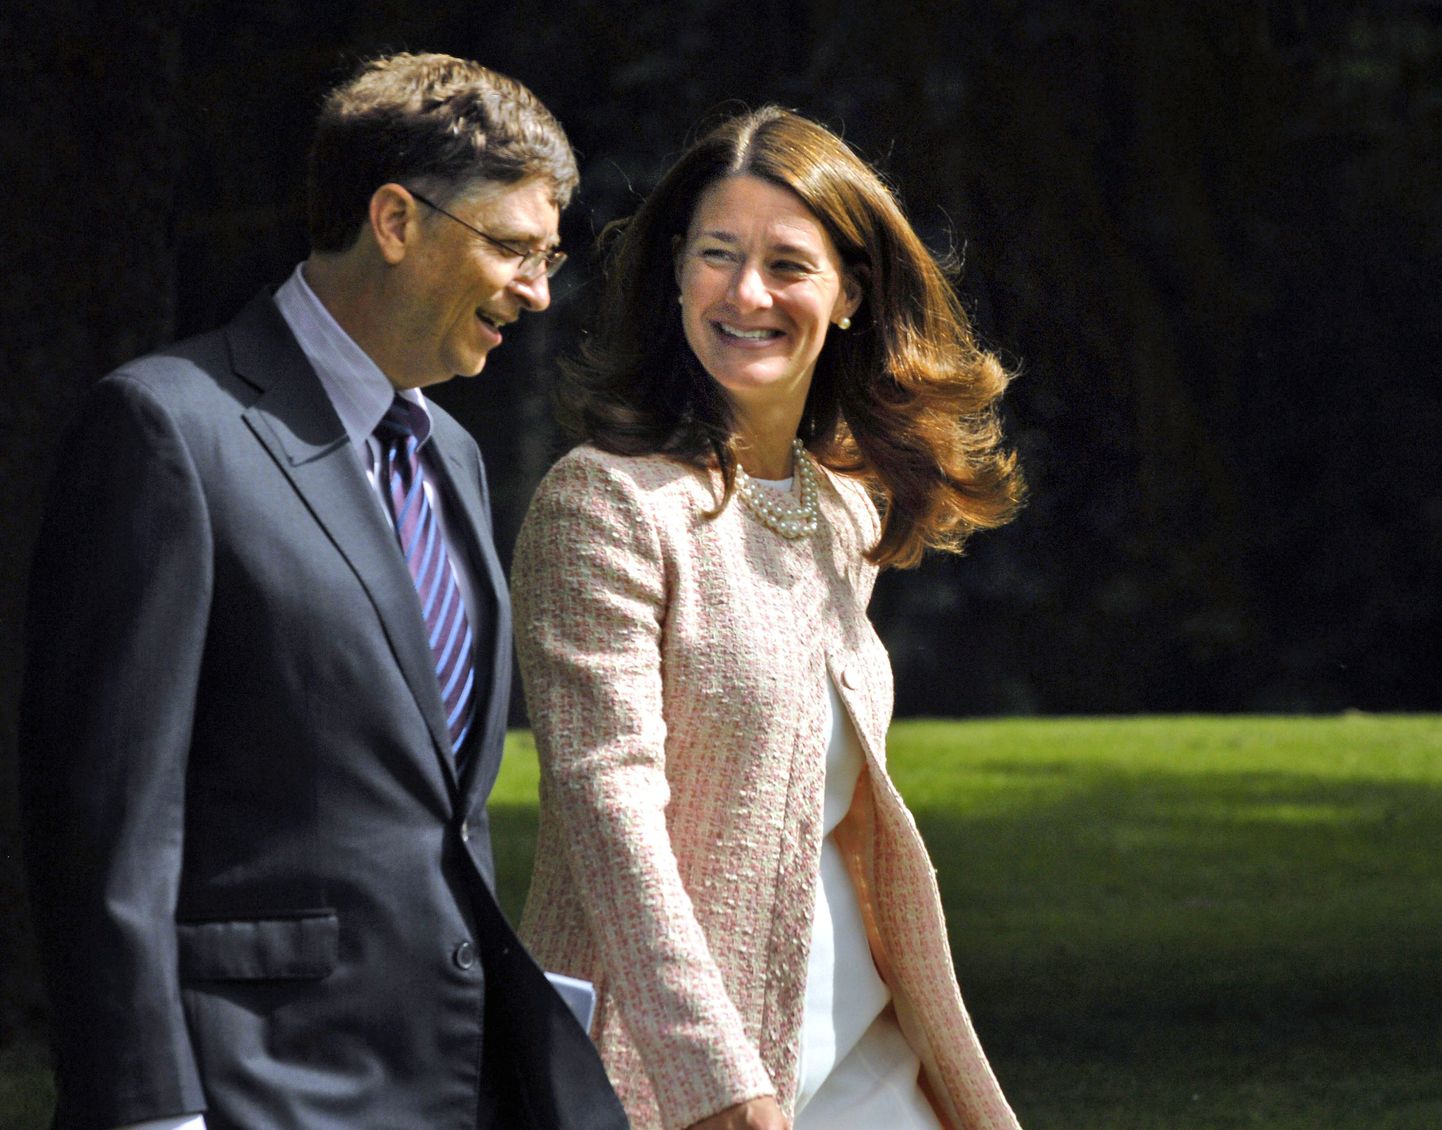 Uuring: miljardärid eelistavad brünette naisi. Fotol Bill Gates  koos abikaasa Melindaga